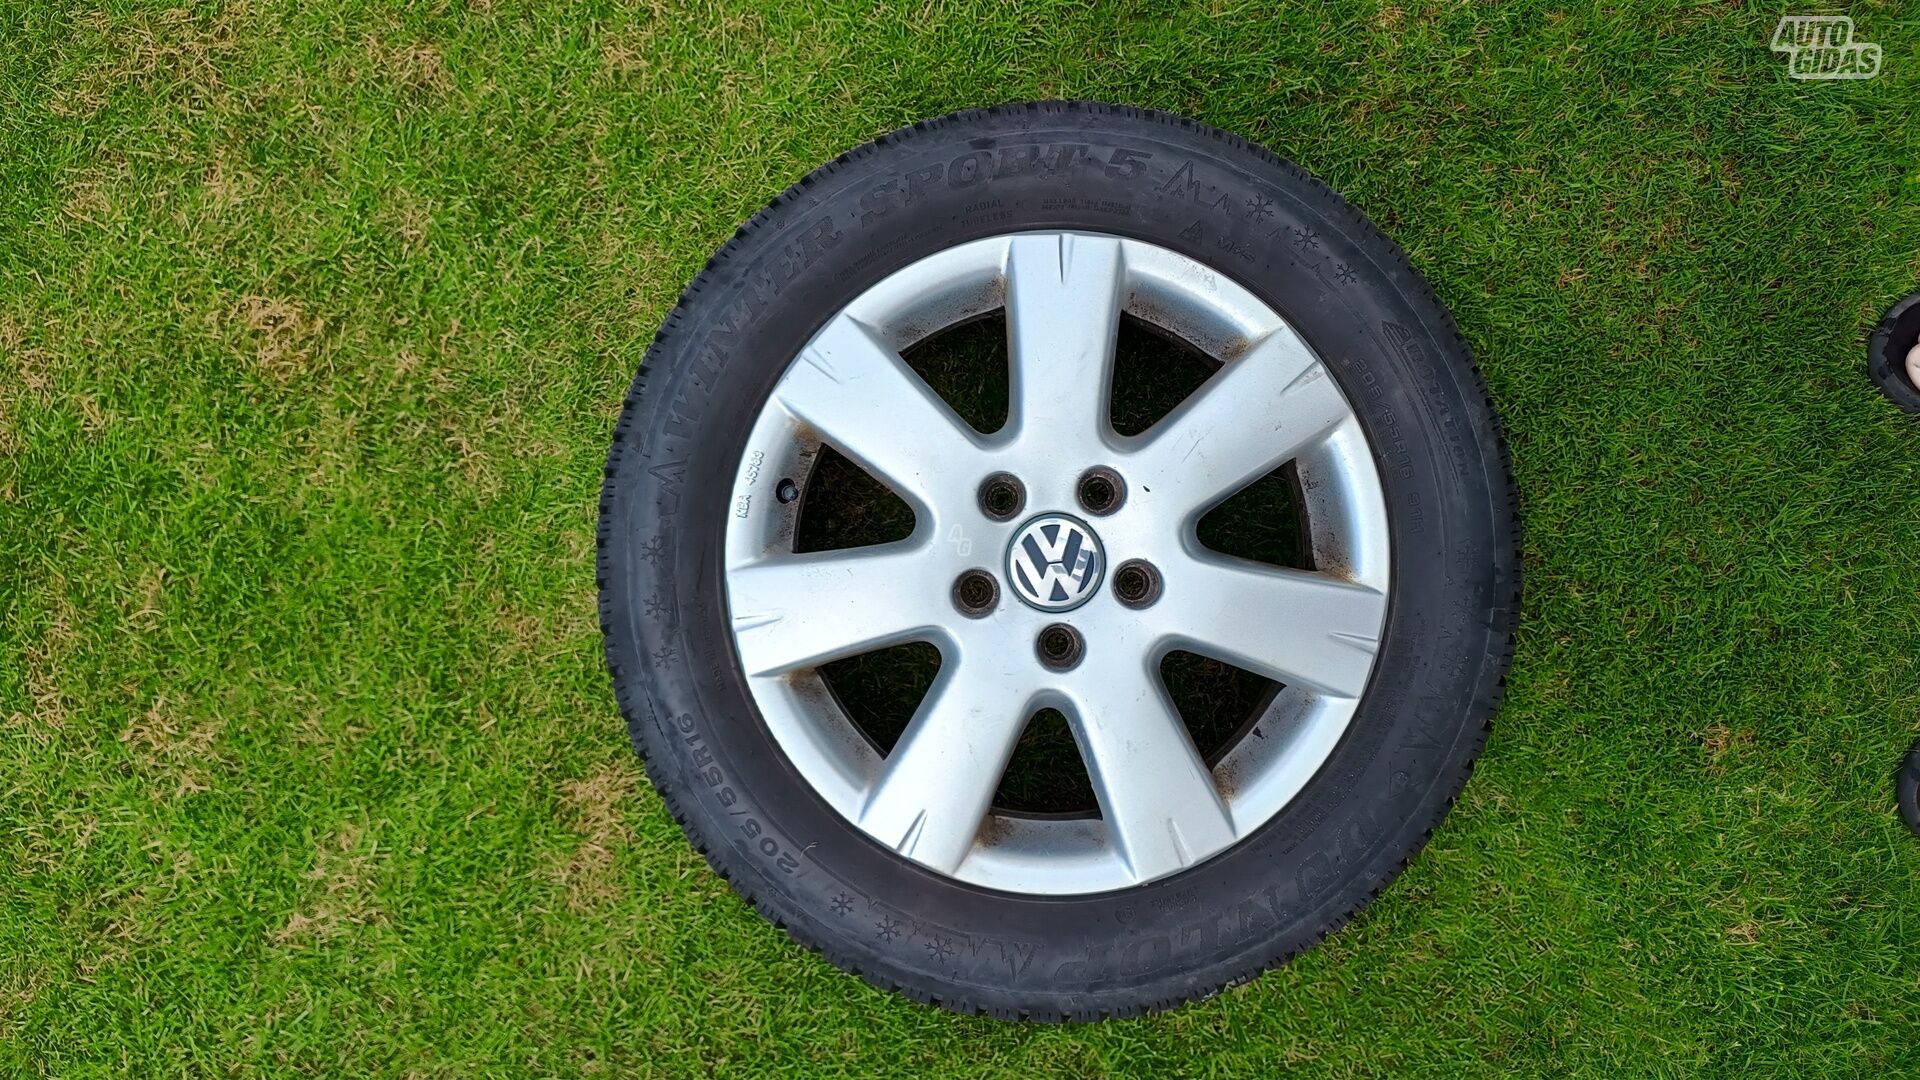 Volkswagen Golf R16 light alloy rims